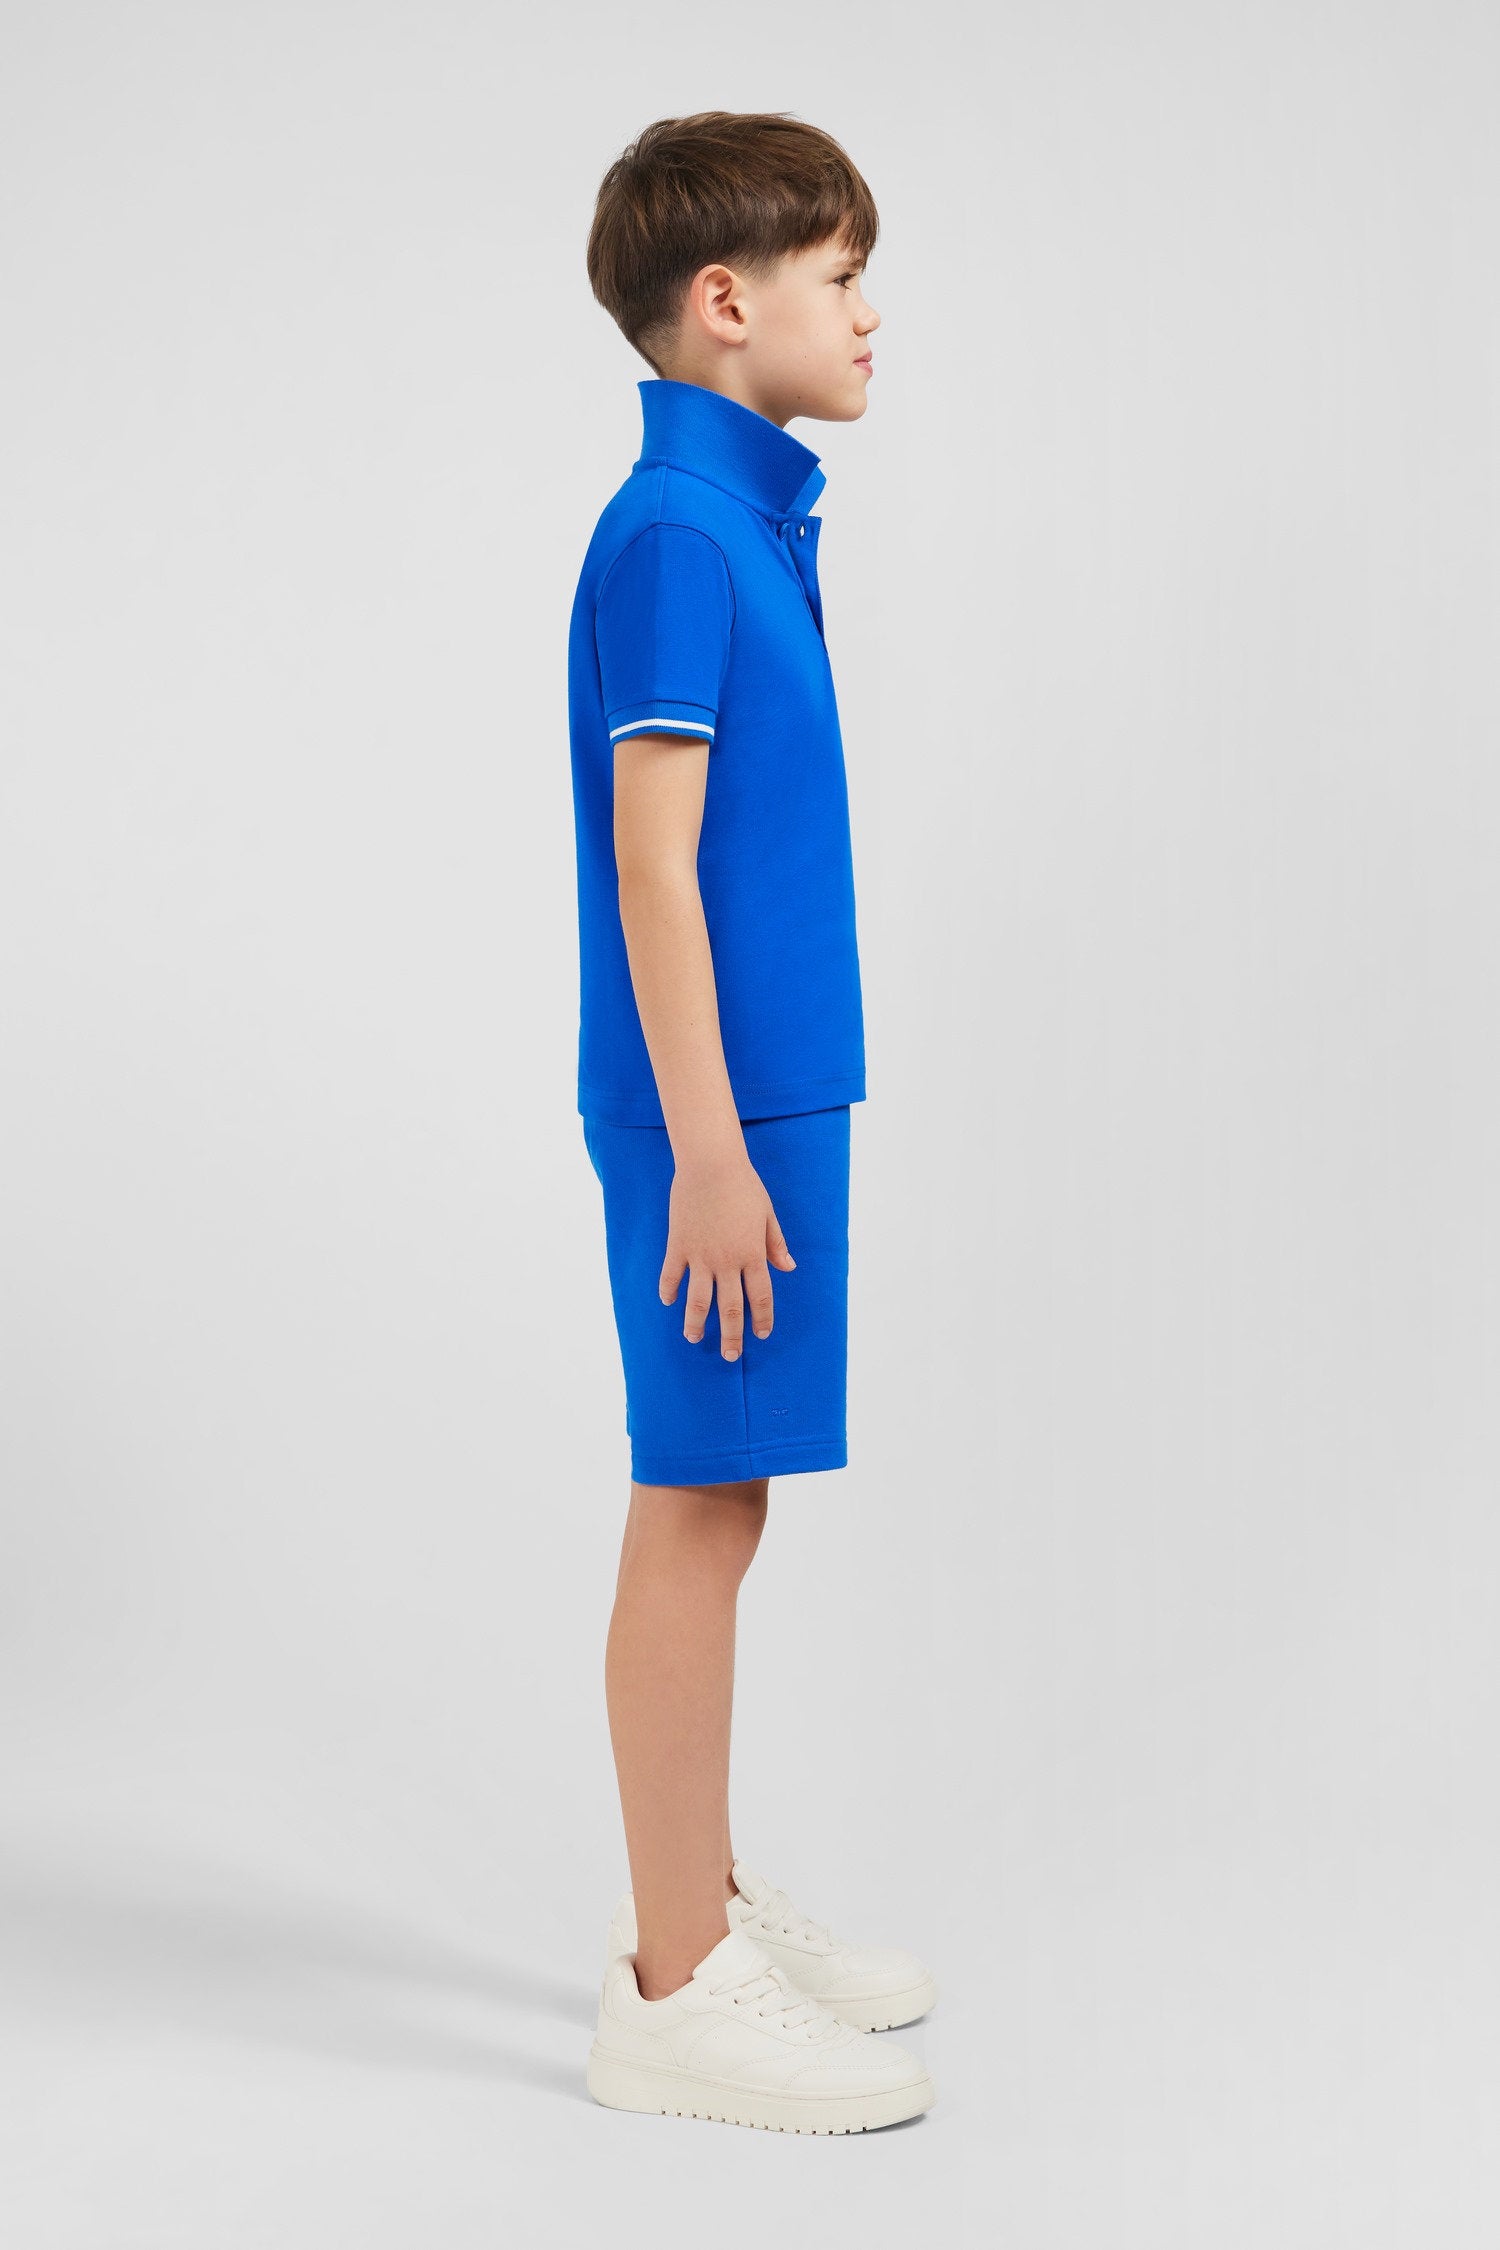 Blue Short-Sleeved Polo Shirt In PiquŽ Cotton_E24MAIPC0040_BLV10_04